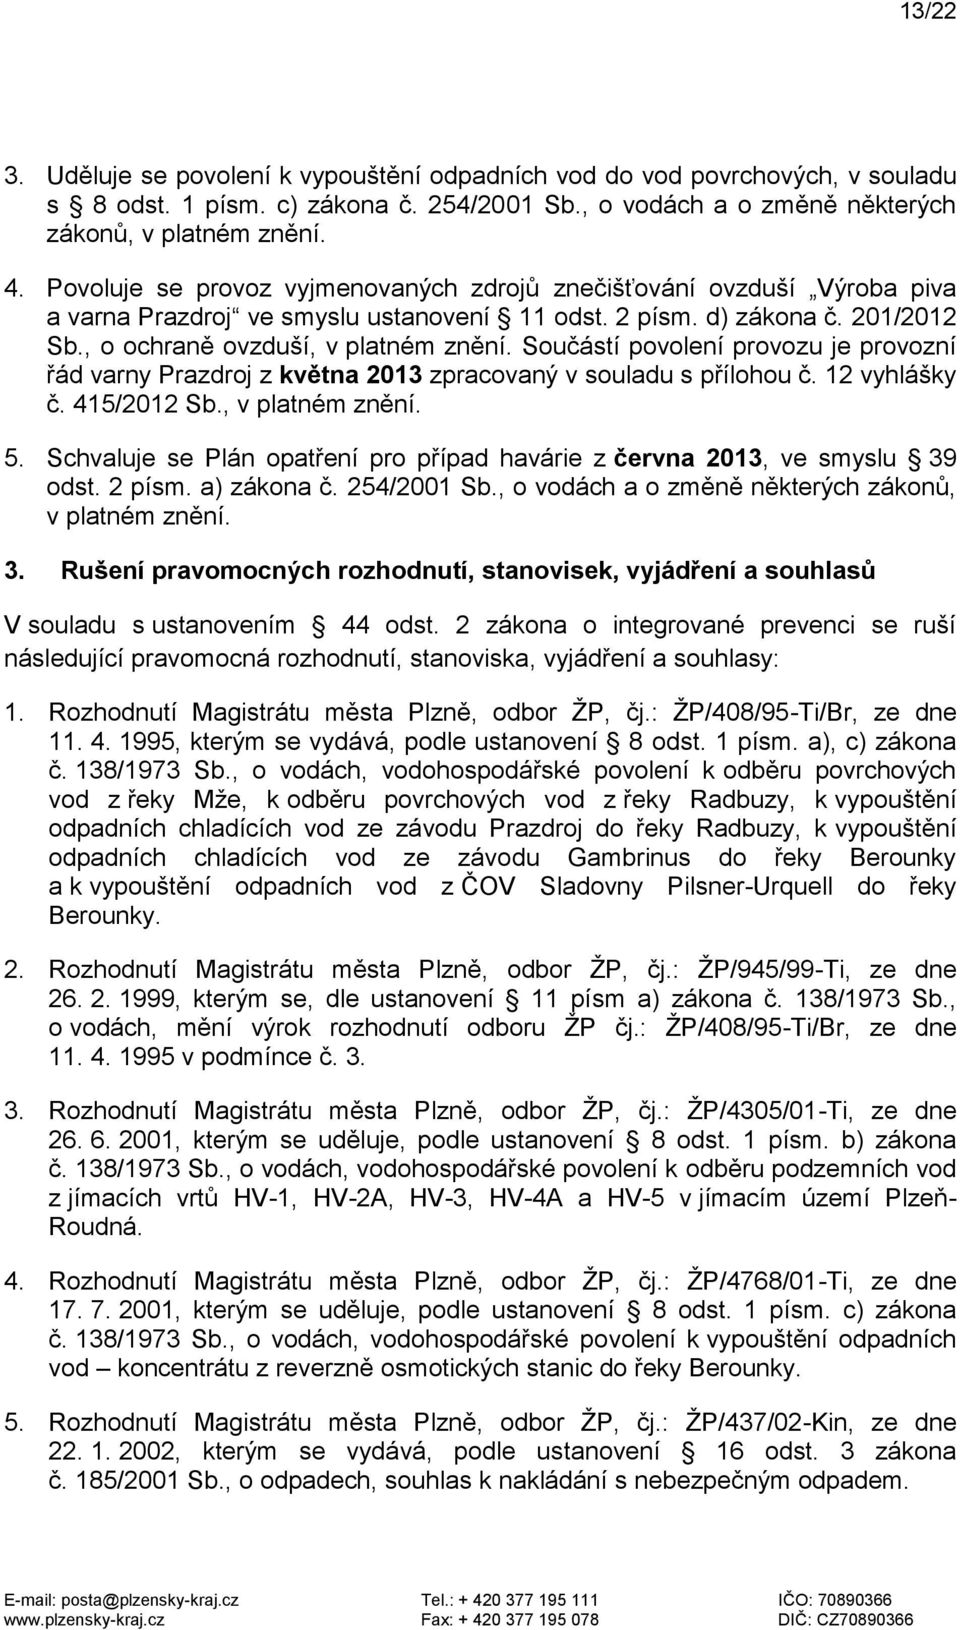 Součástí povolení provozu je provozní řád varny Prazdroj z května 2013 zpracovaný v souladu s přílohou č. 12 vyhlášky č. 415/2012 Sb., v platném znění. 5.